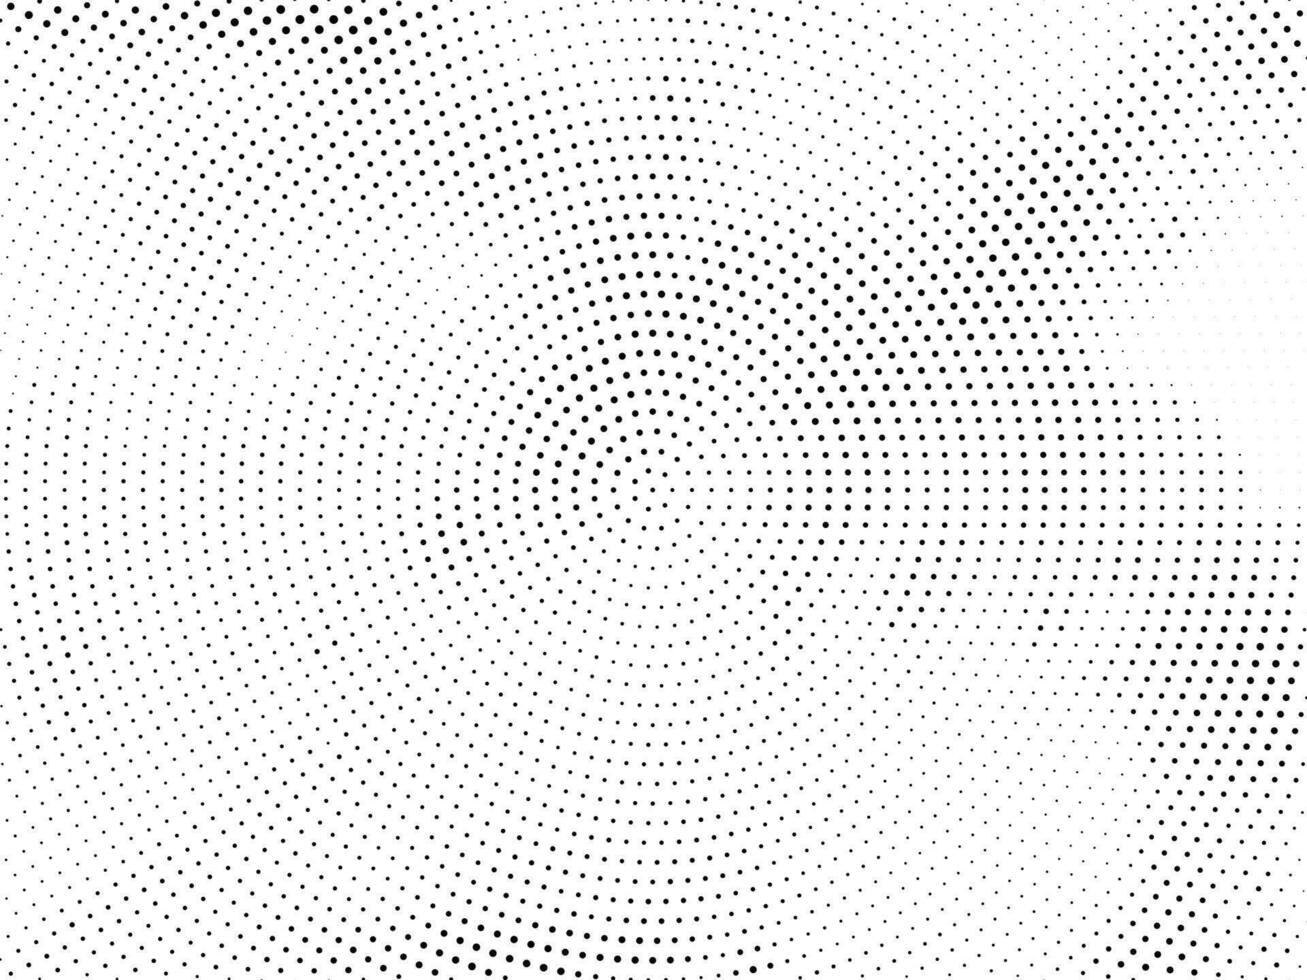 abstrakt cirkulär halvton design dekorativ bakgrund vektor